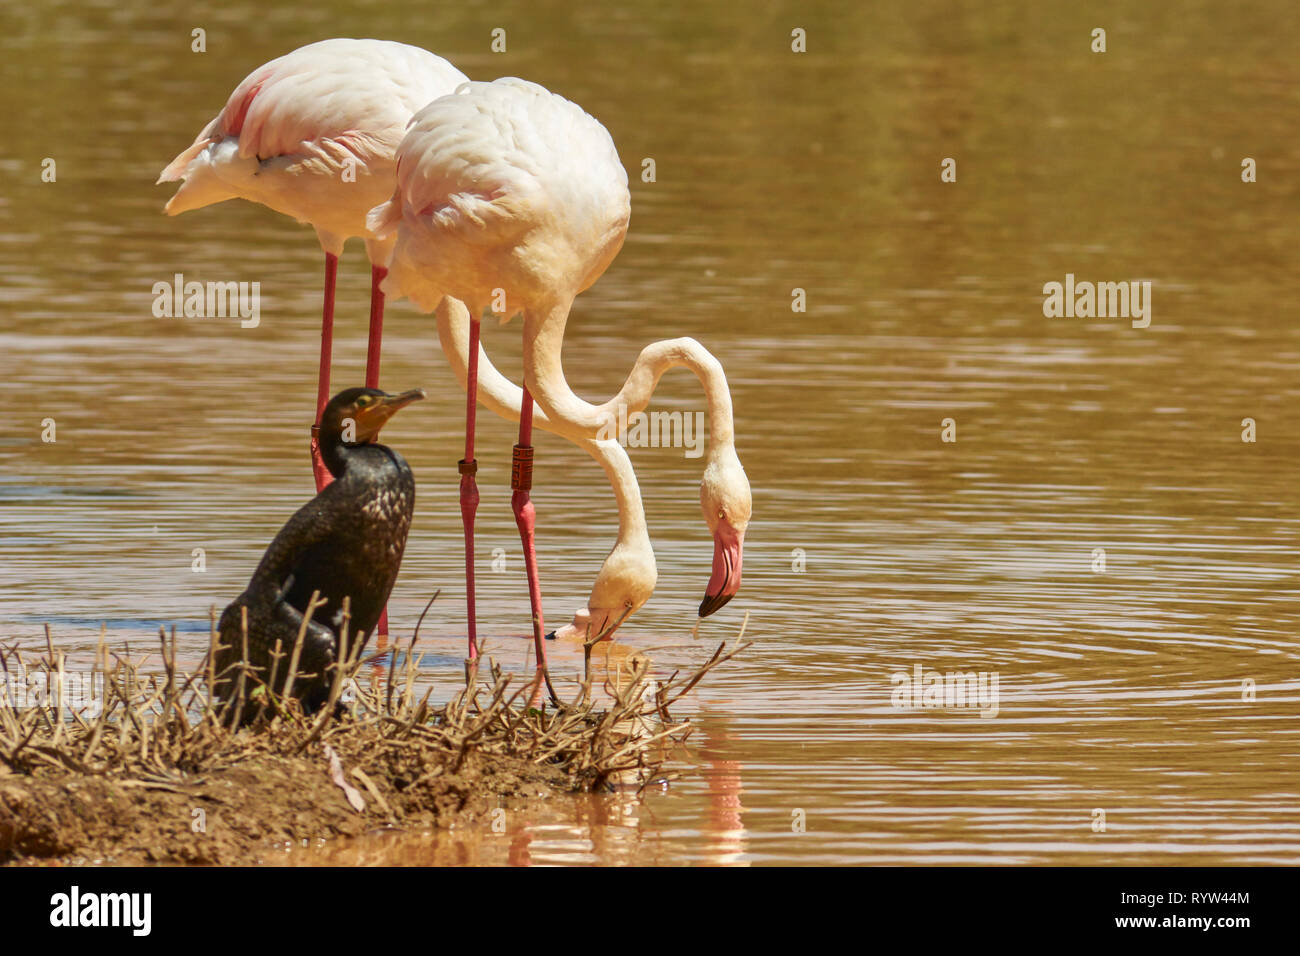 La politique commune de flamingo (Phoenicopterus roseus) est une espèce d'oiseaux de la famille des phoenicopteriforme Phoenicopteridae qui vit dans les zones humides d'Afric Banque D'Images